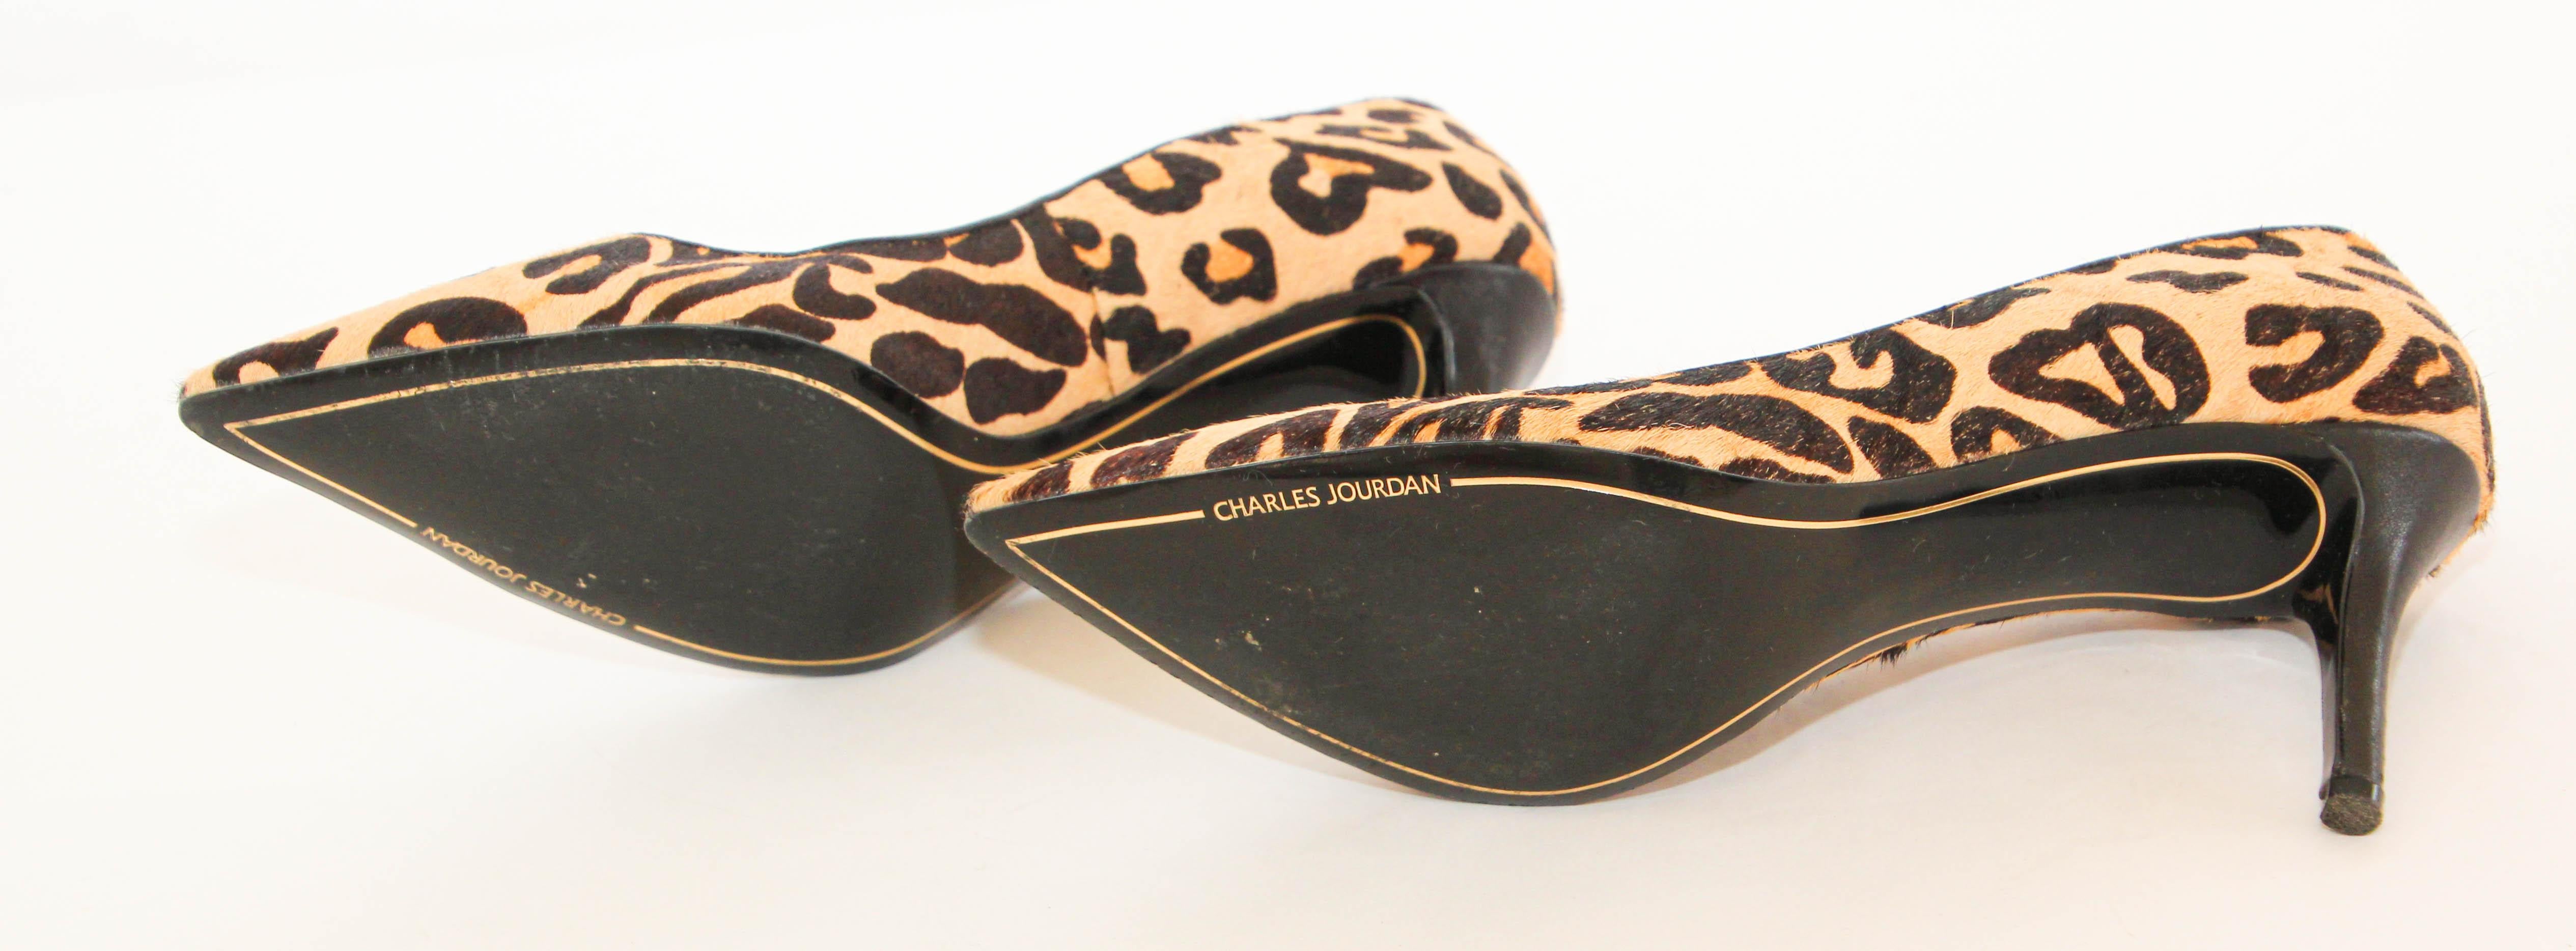 Charles Jourdan Paris Leopard Print Pony Hair heels Pumps Size US 6 EU 36 For Sale 8